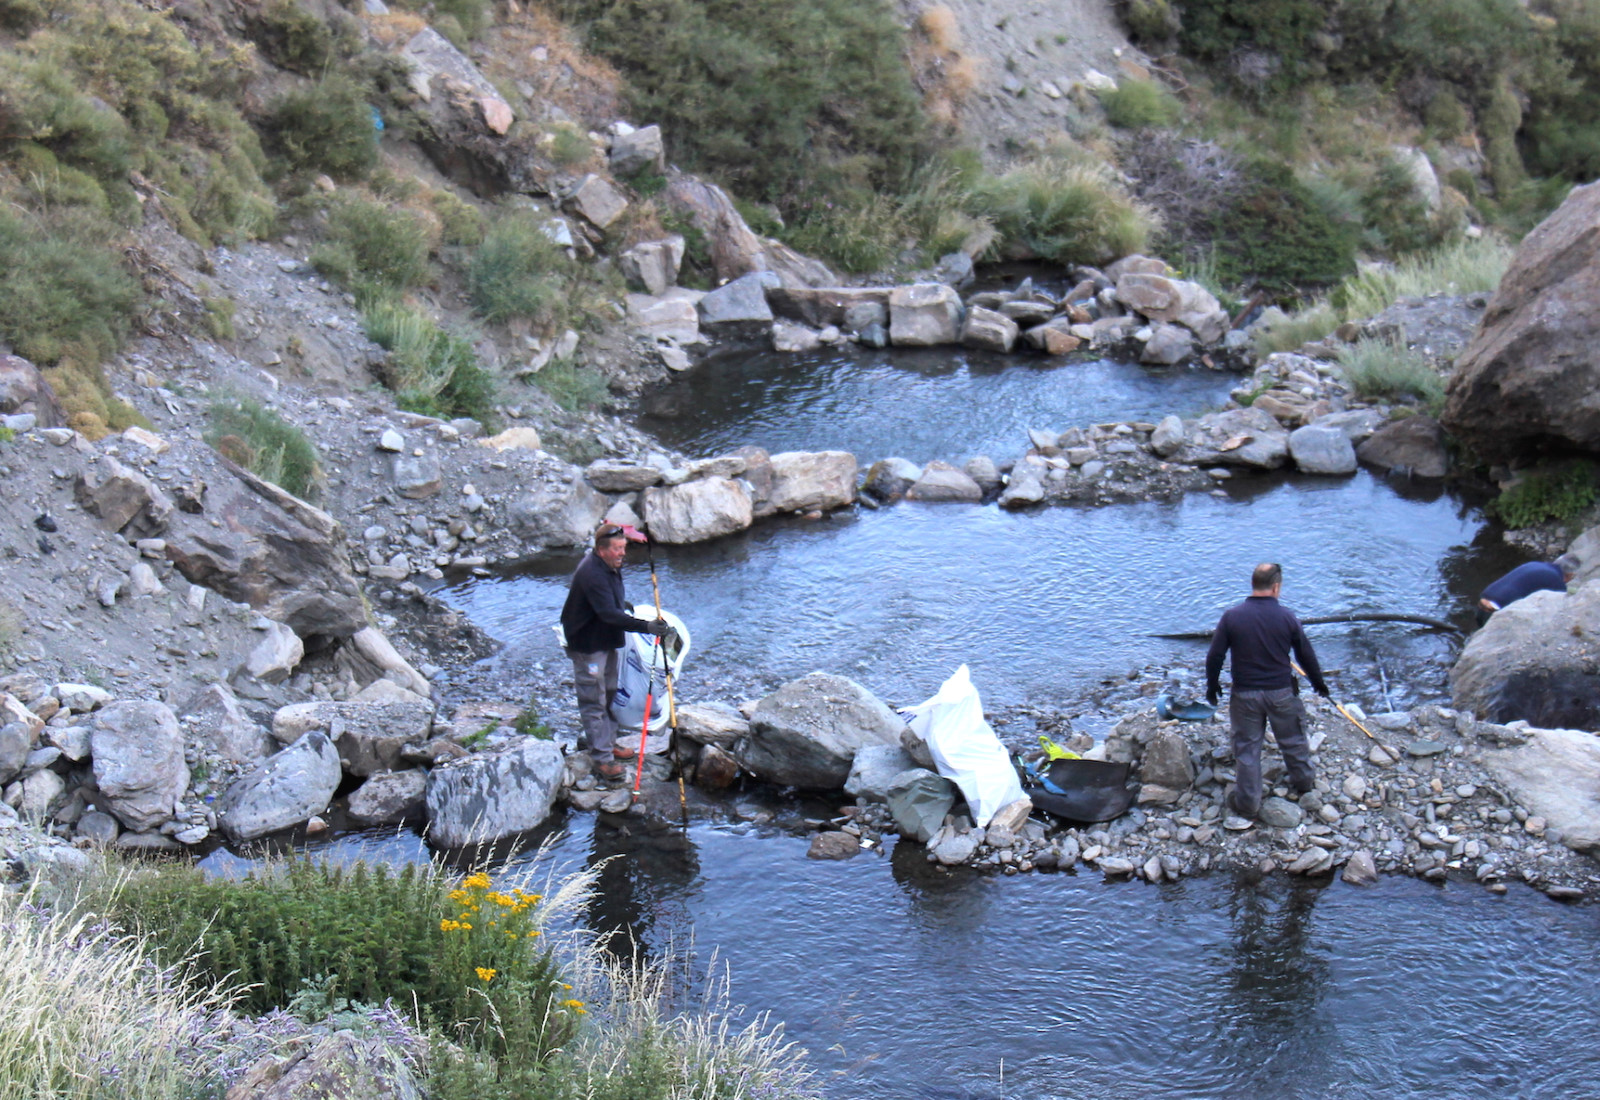 Sierra Nevada realiza una campaña de limpieza en el entorno del área esquiable